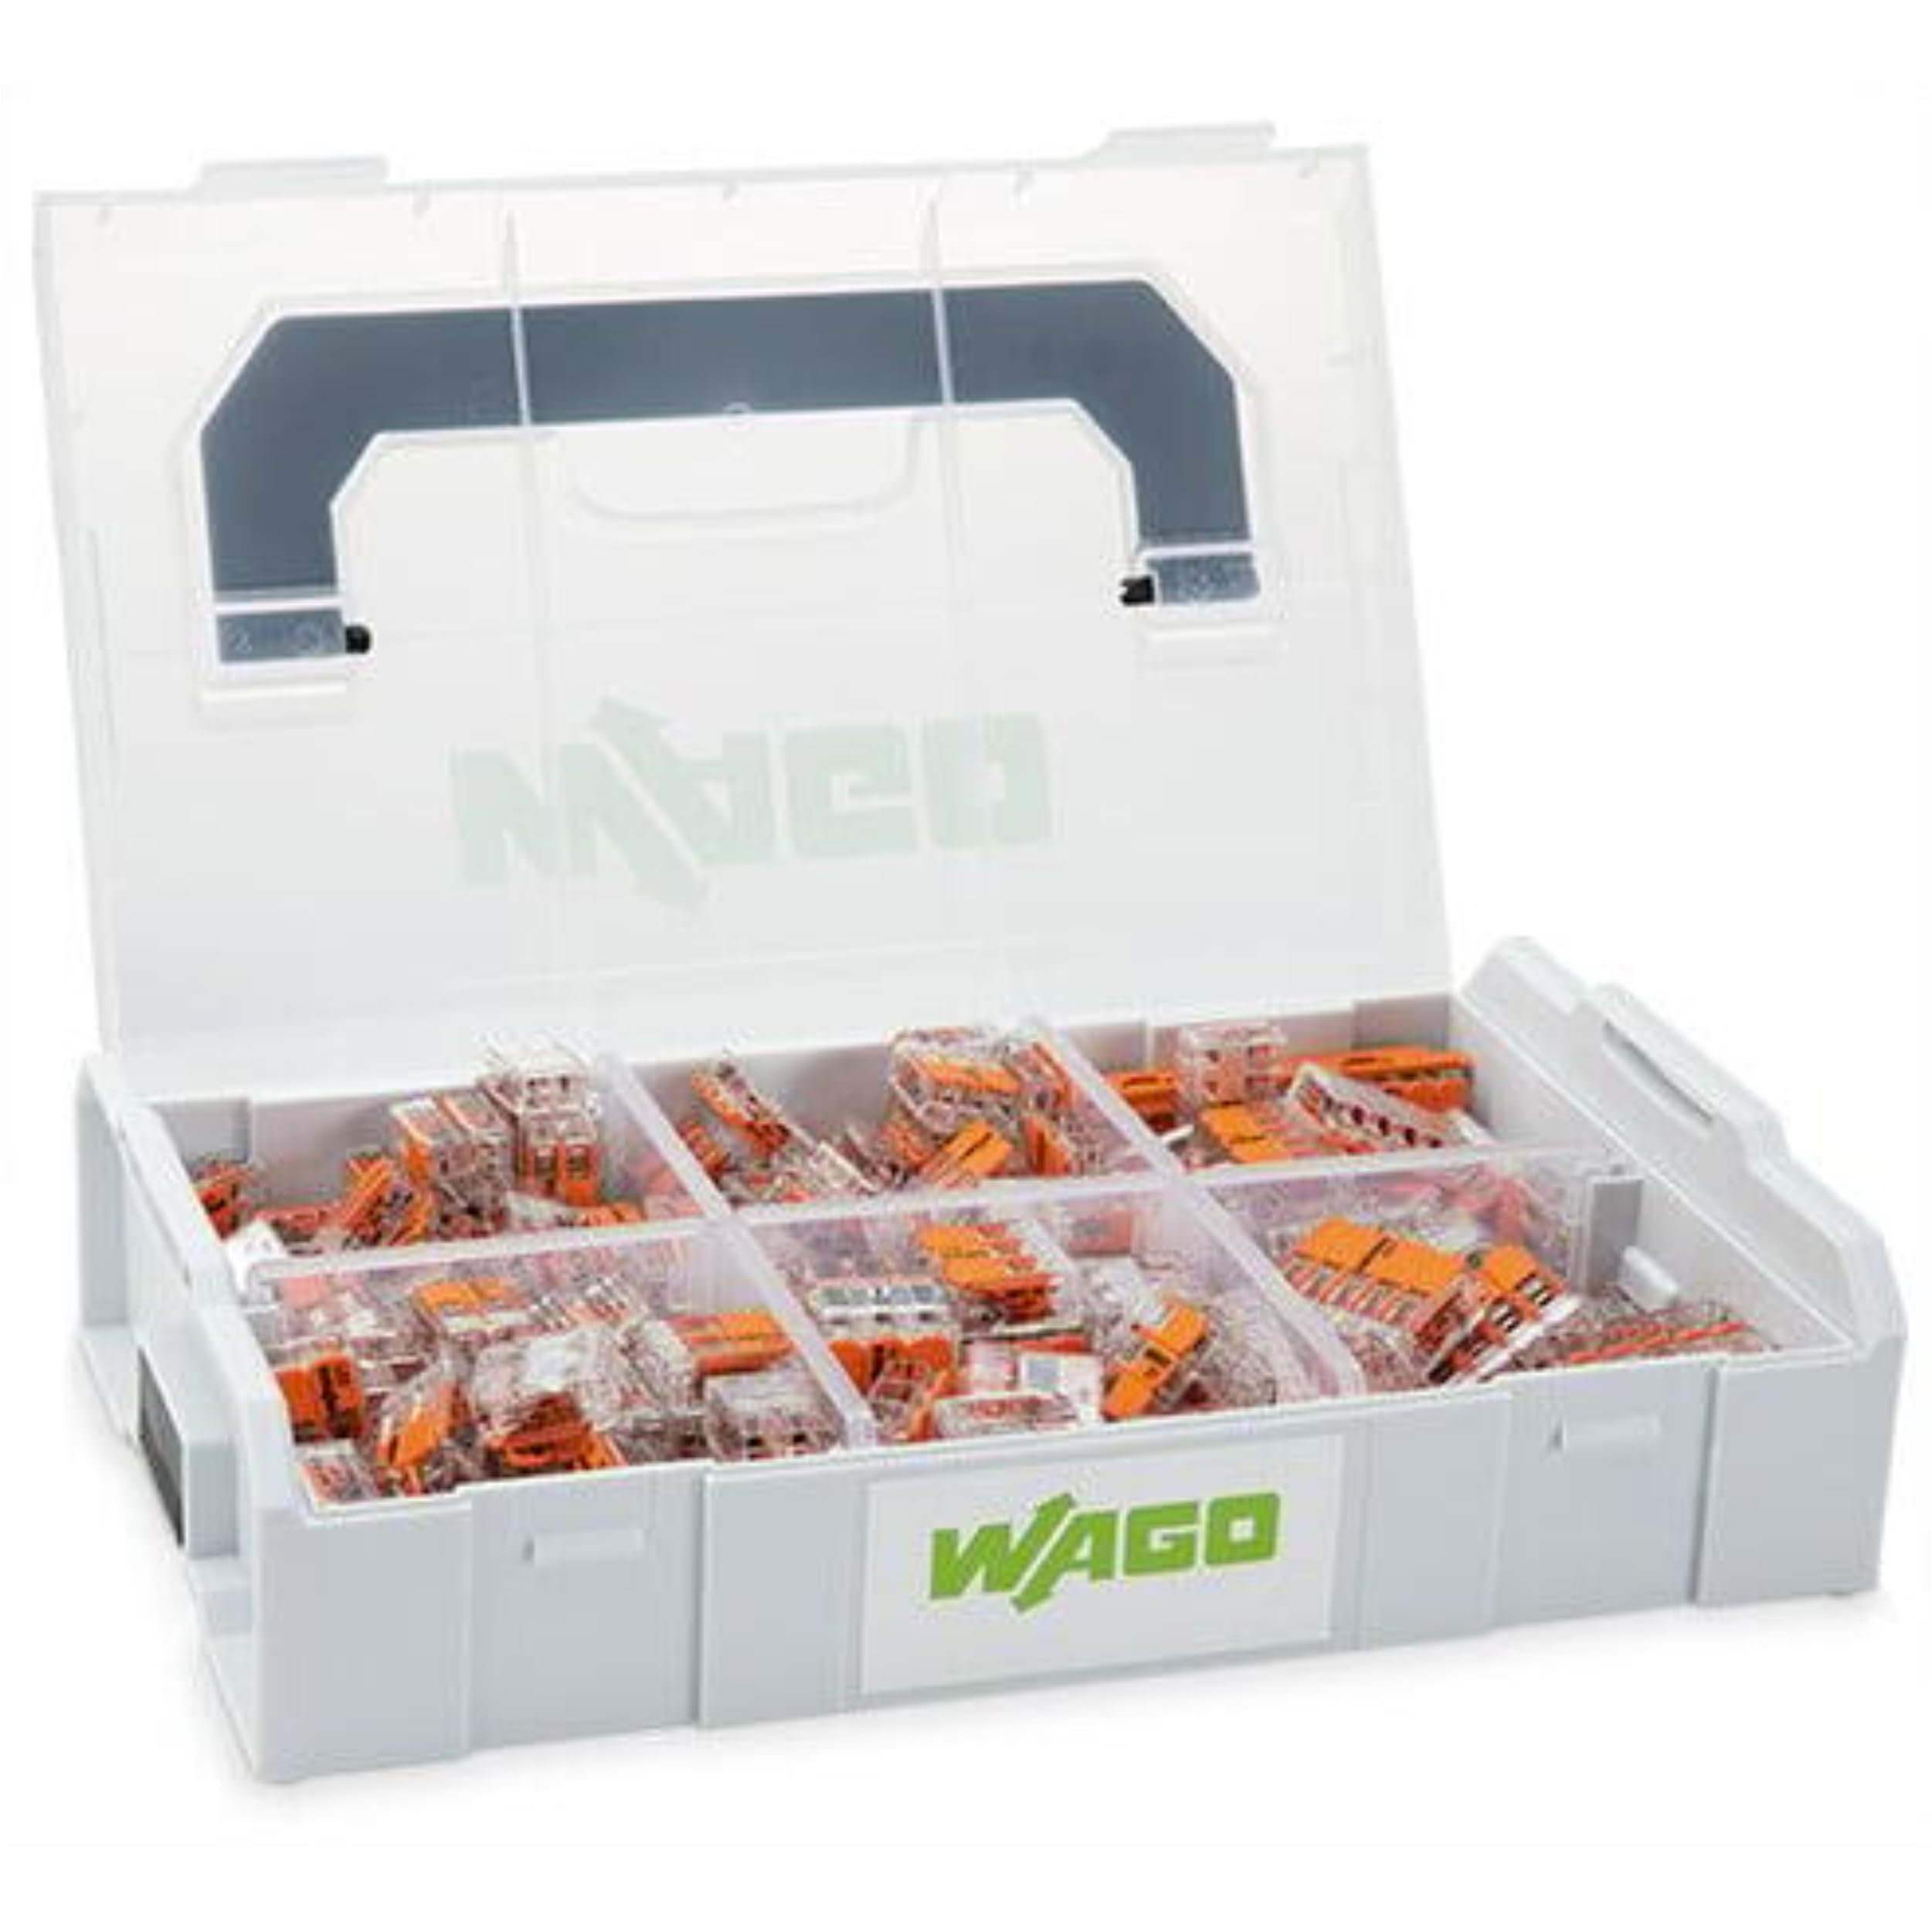 WAGO Verbindungsklemmen-Set 887-957 | 186-teilig, mit verschiedenen Verbindungsklemmen mit Hebeln und Befestigungsadapter der Serie 221 für alle Leiterarten, in praktischer L-BOXX Mini